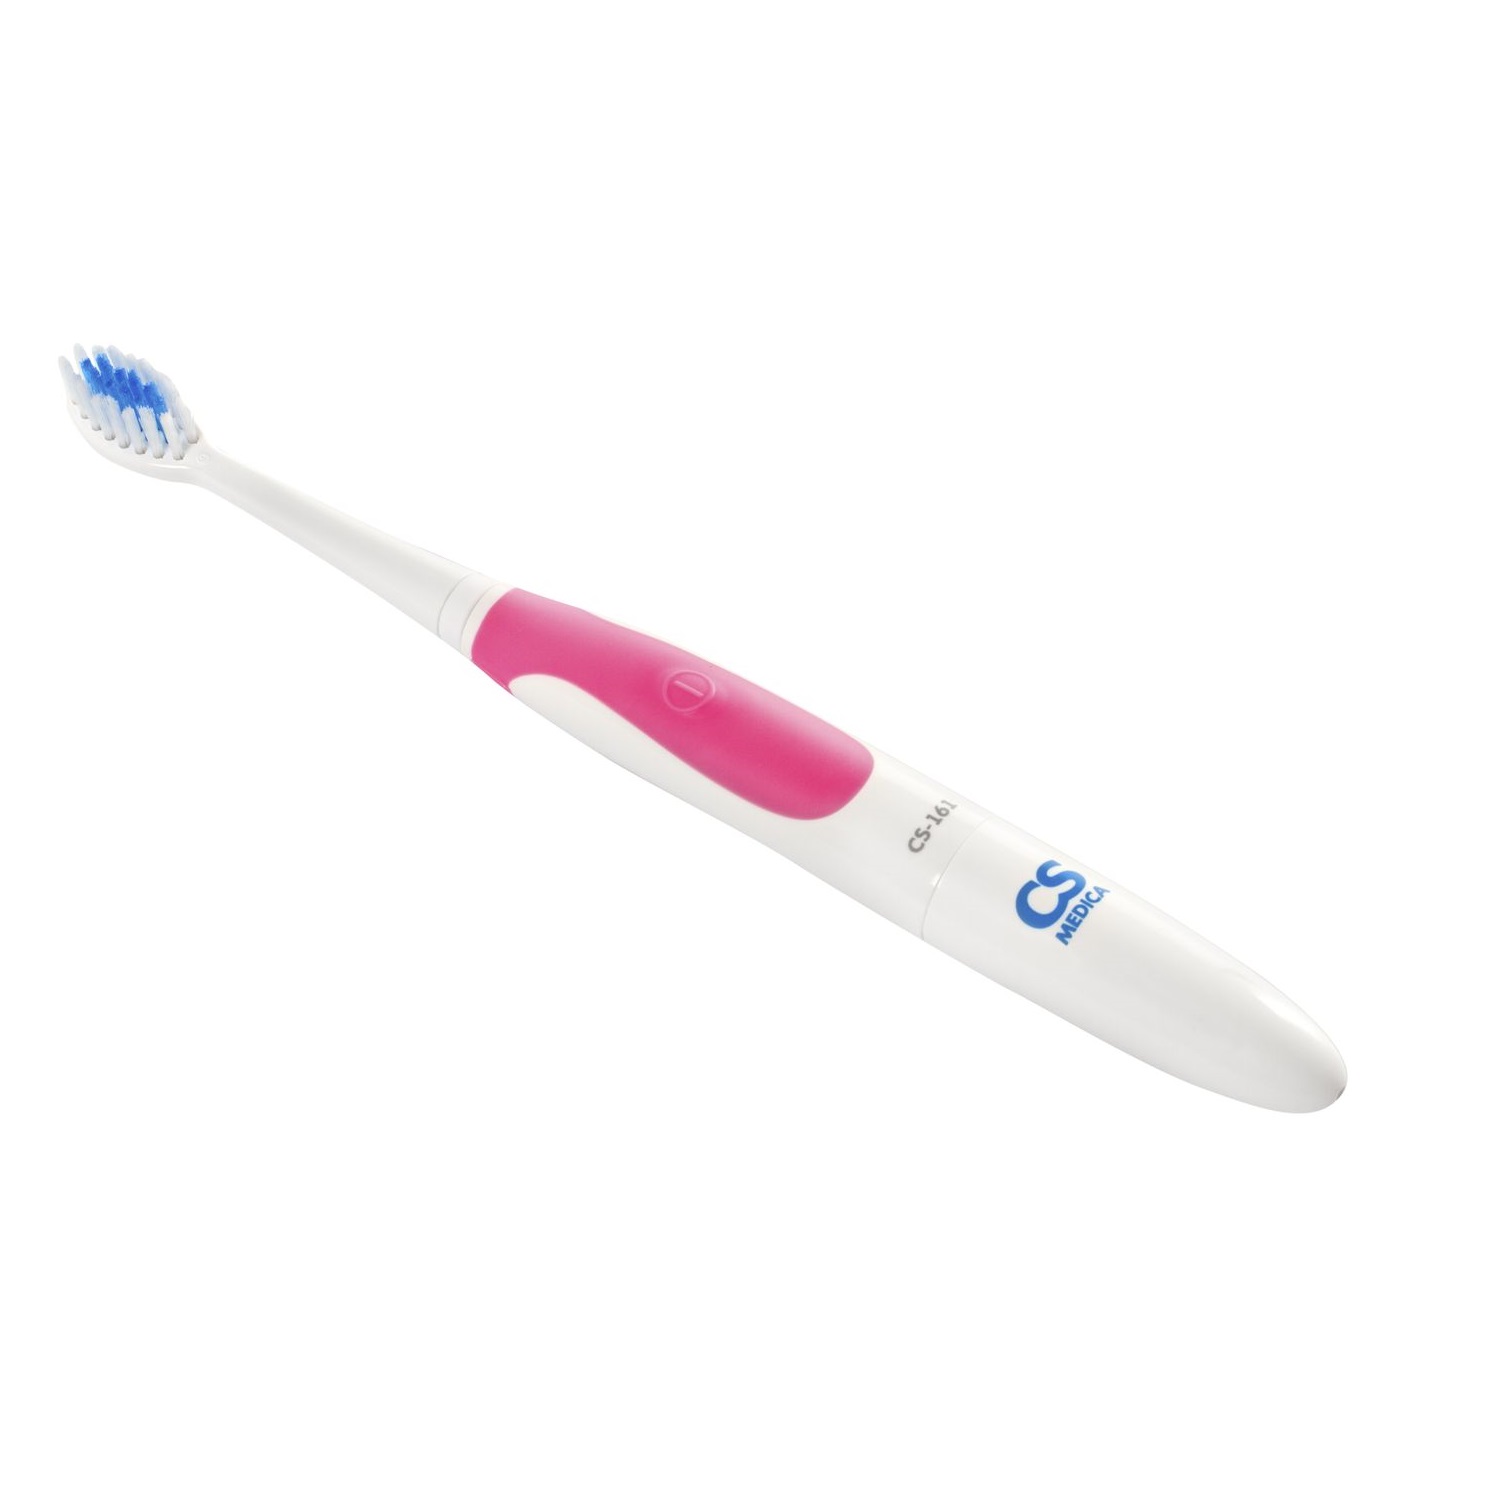 Купить СиЭс Медика щетка зубная Электрическая звуковая CS-161 розовая, CS Medica